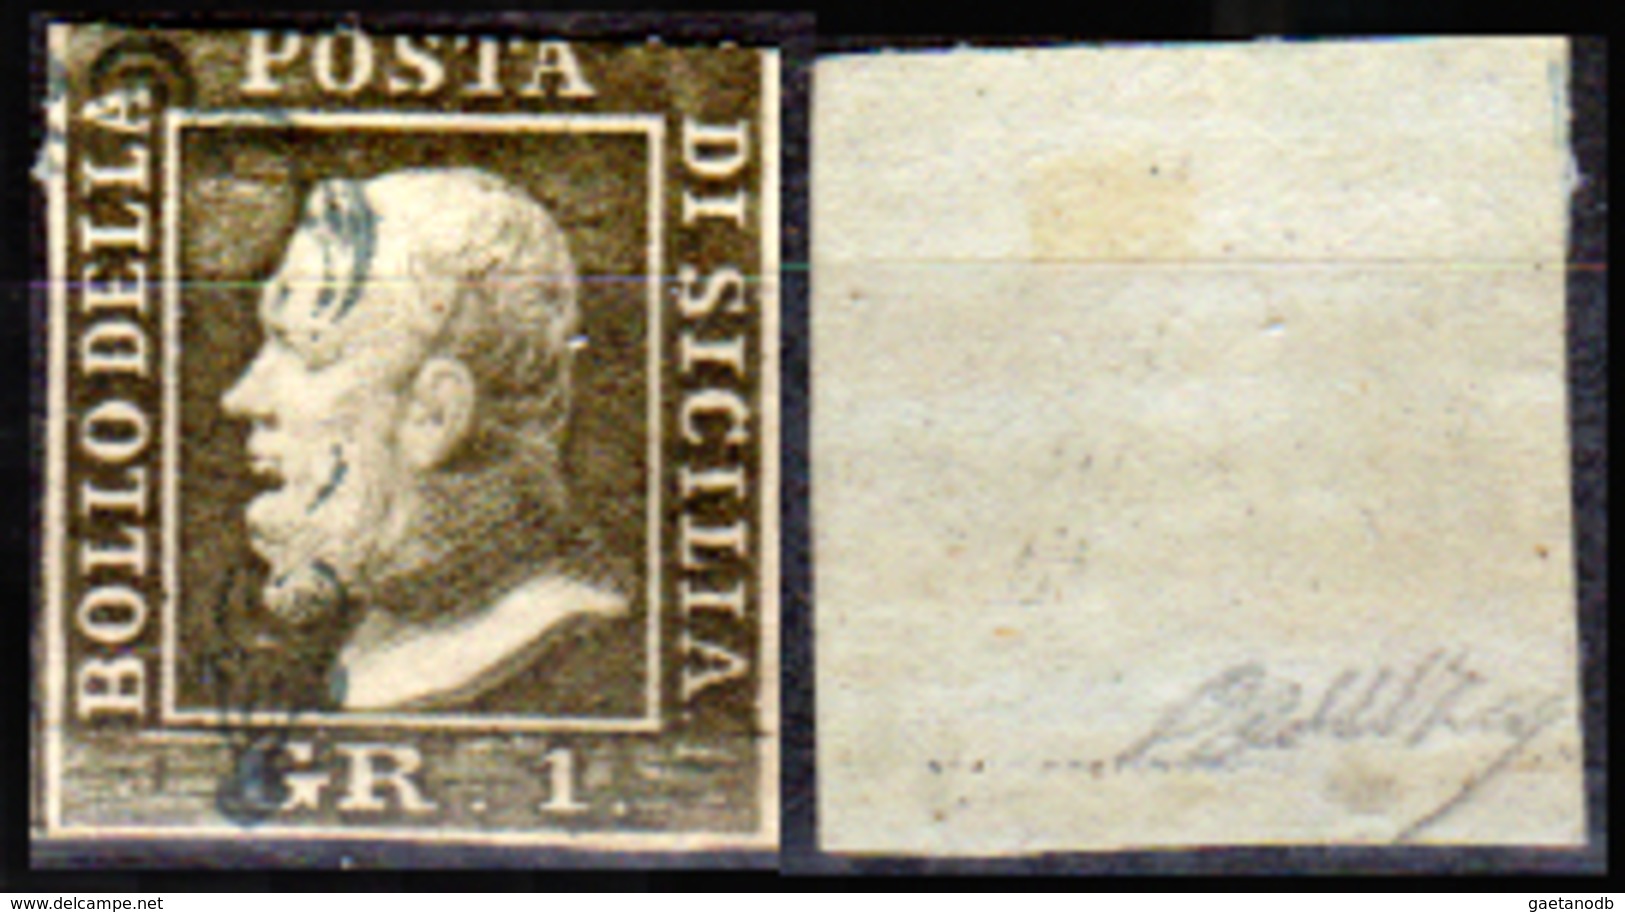 Sicilia-029 - Emissione 1859:  Sassone N. 4 (o) Used - Senza Difetti Occulti. - Sicile